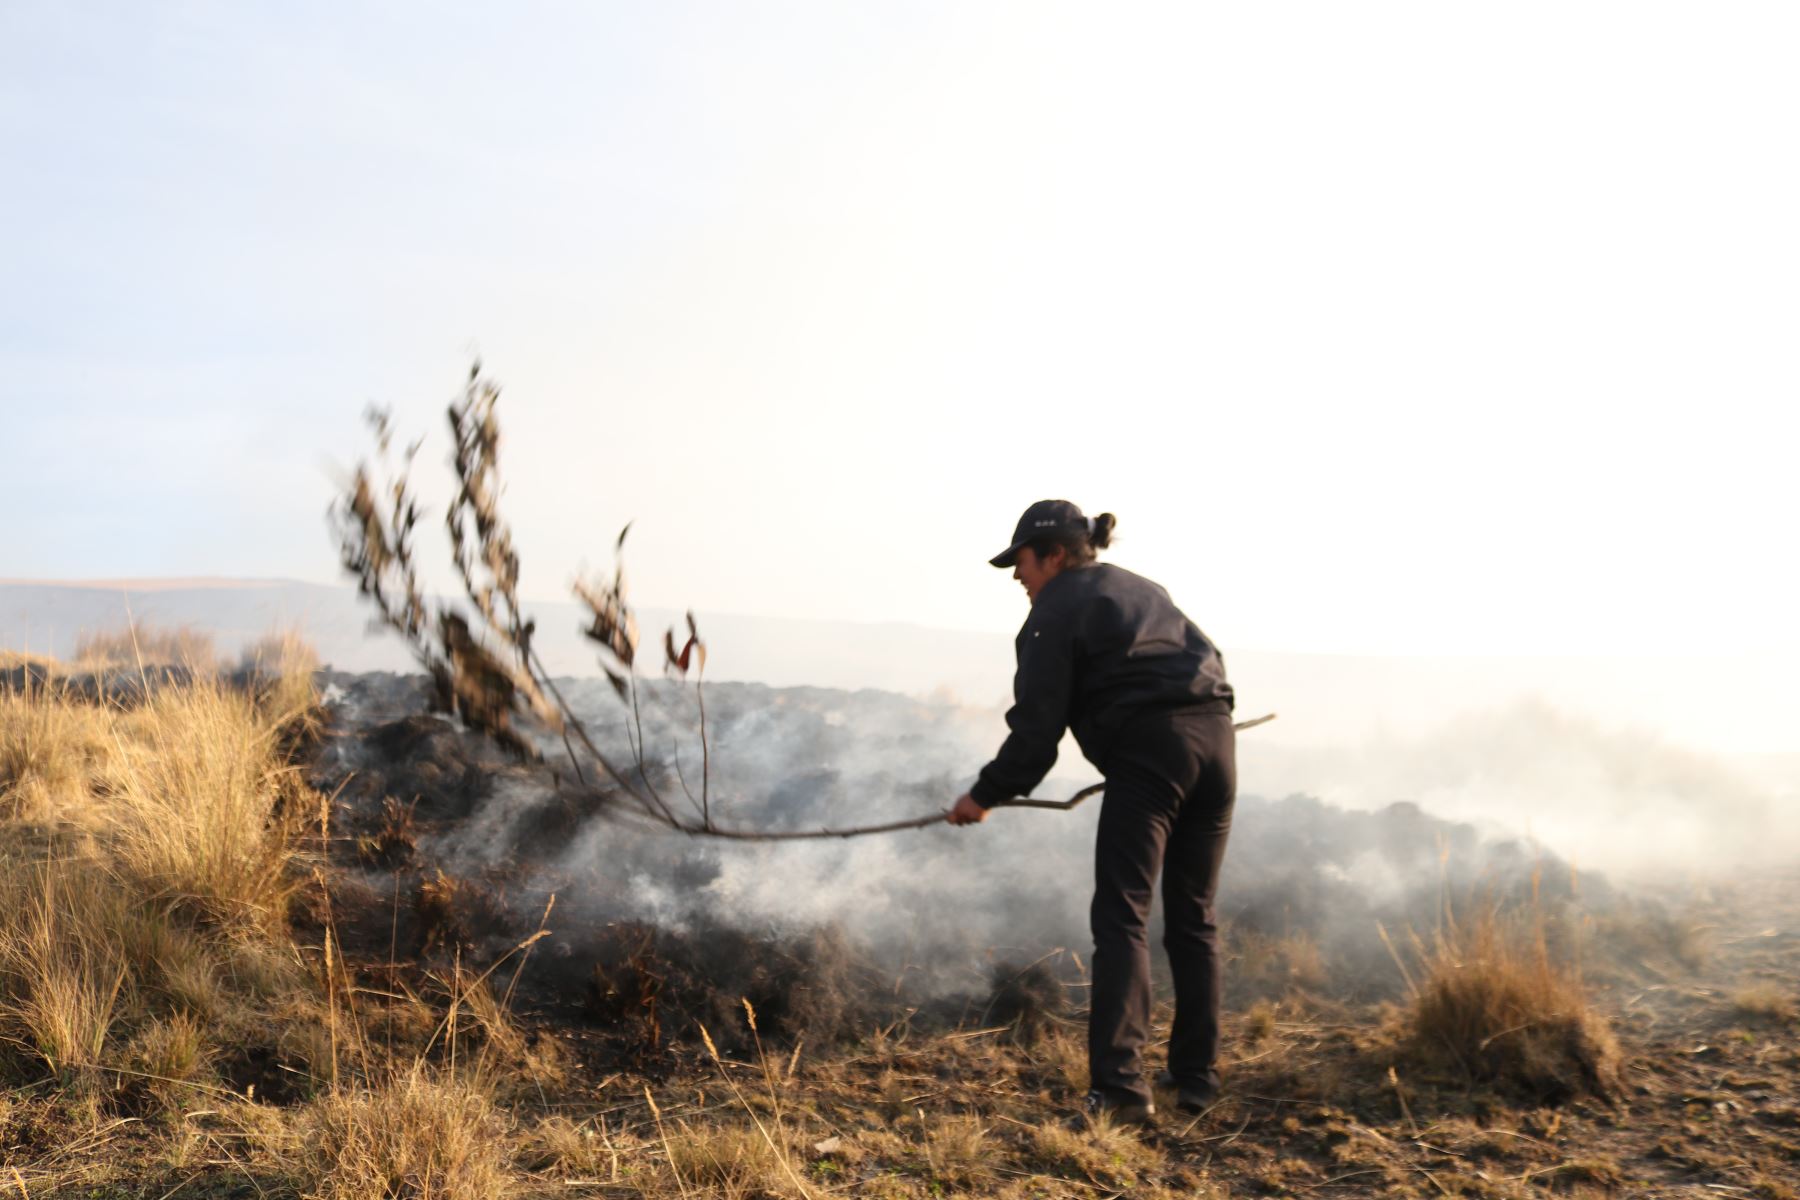 El incendio forestal que se registró en el cerro Quisapata, a la altura del kilómetro 6+200 de la carretera Jatumpata - Quisapata, sector de Condado, distrito y provincia de Abancay, región Apurímac, destruyó 5 hectáreas de cobertura natural, informó el Instituto Nacional de Defensa Civil (Indeci).ANDINA